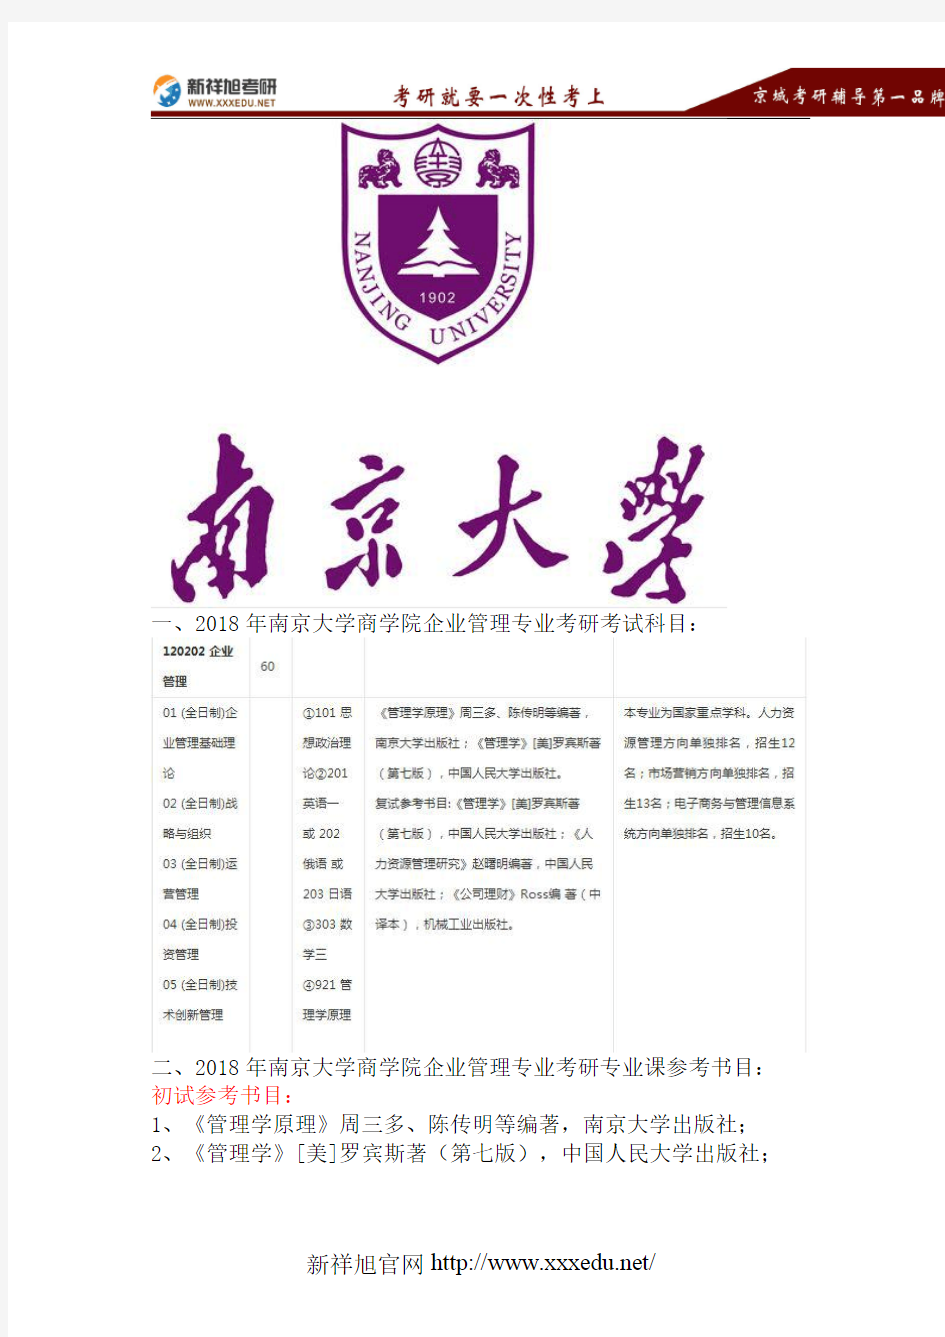 2018南京大学企业管理考研考试科目、招生人数、参考书目、复试分数线、报录比、拟录取名单、复试安排